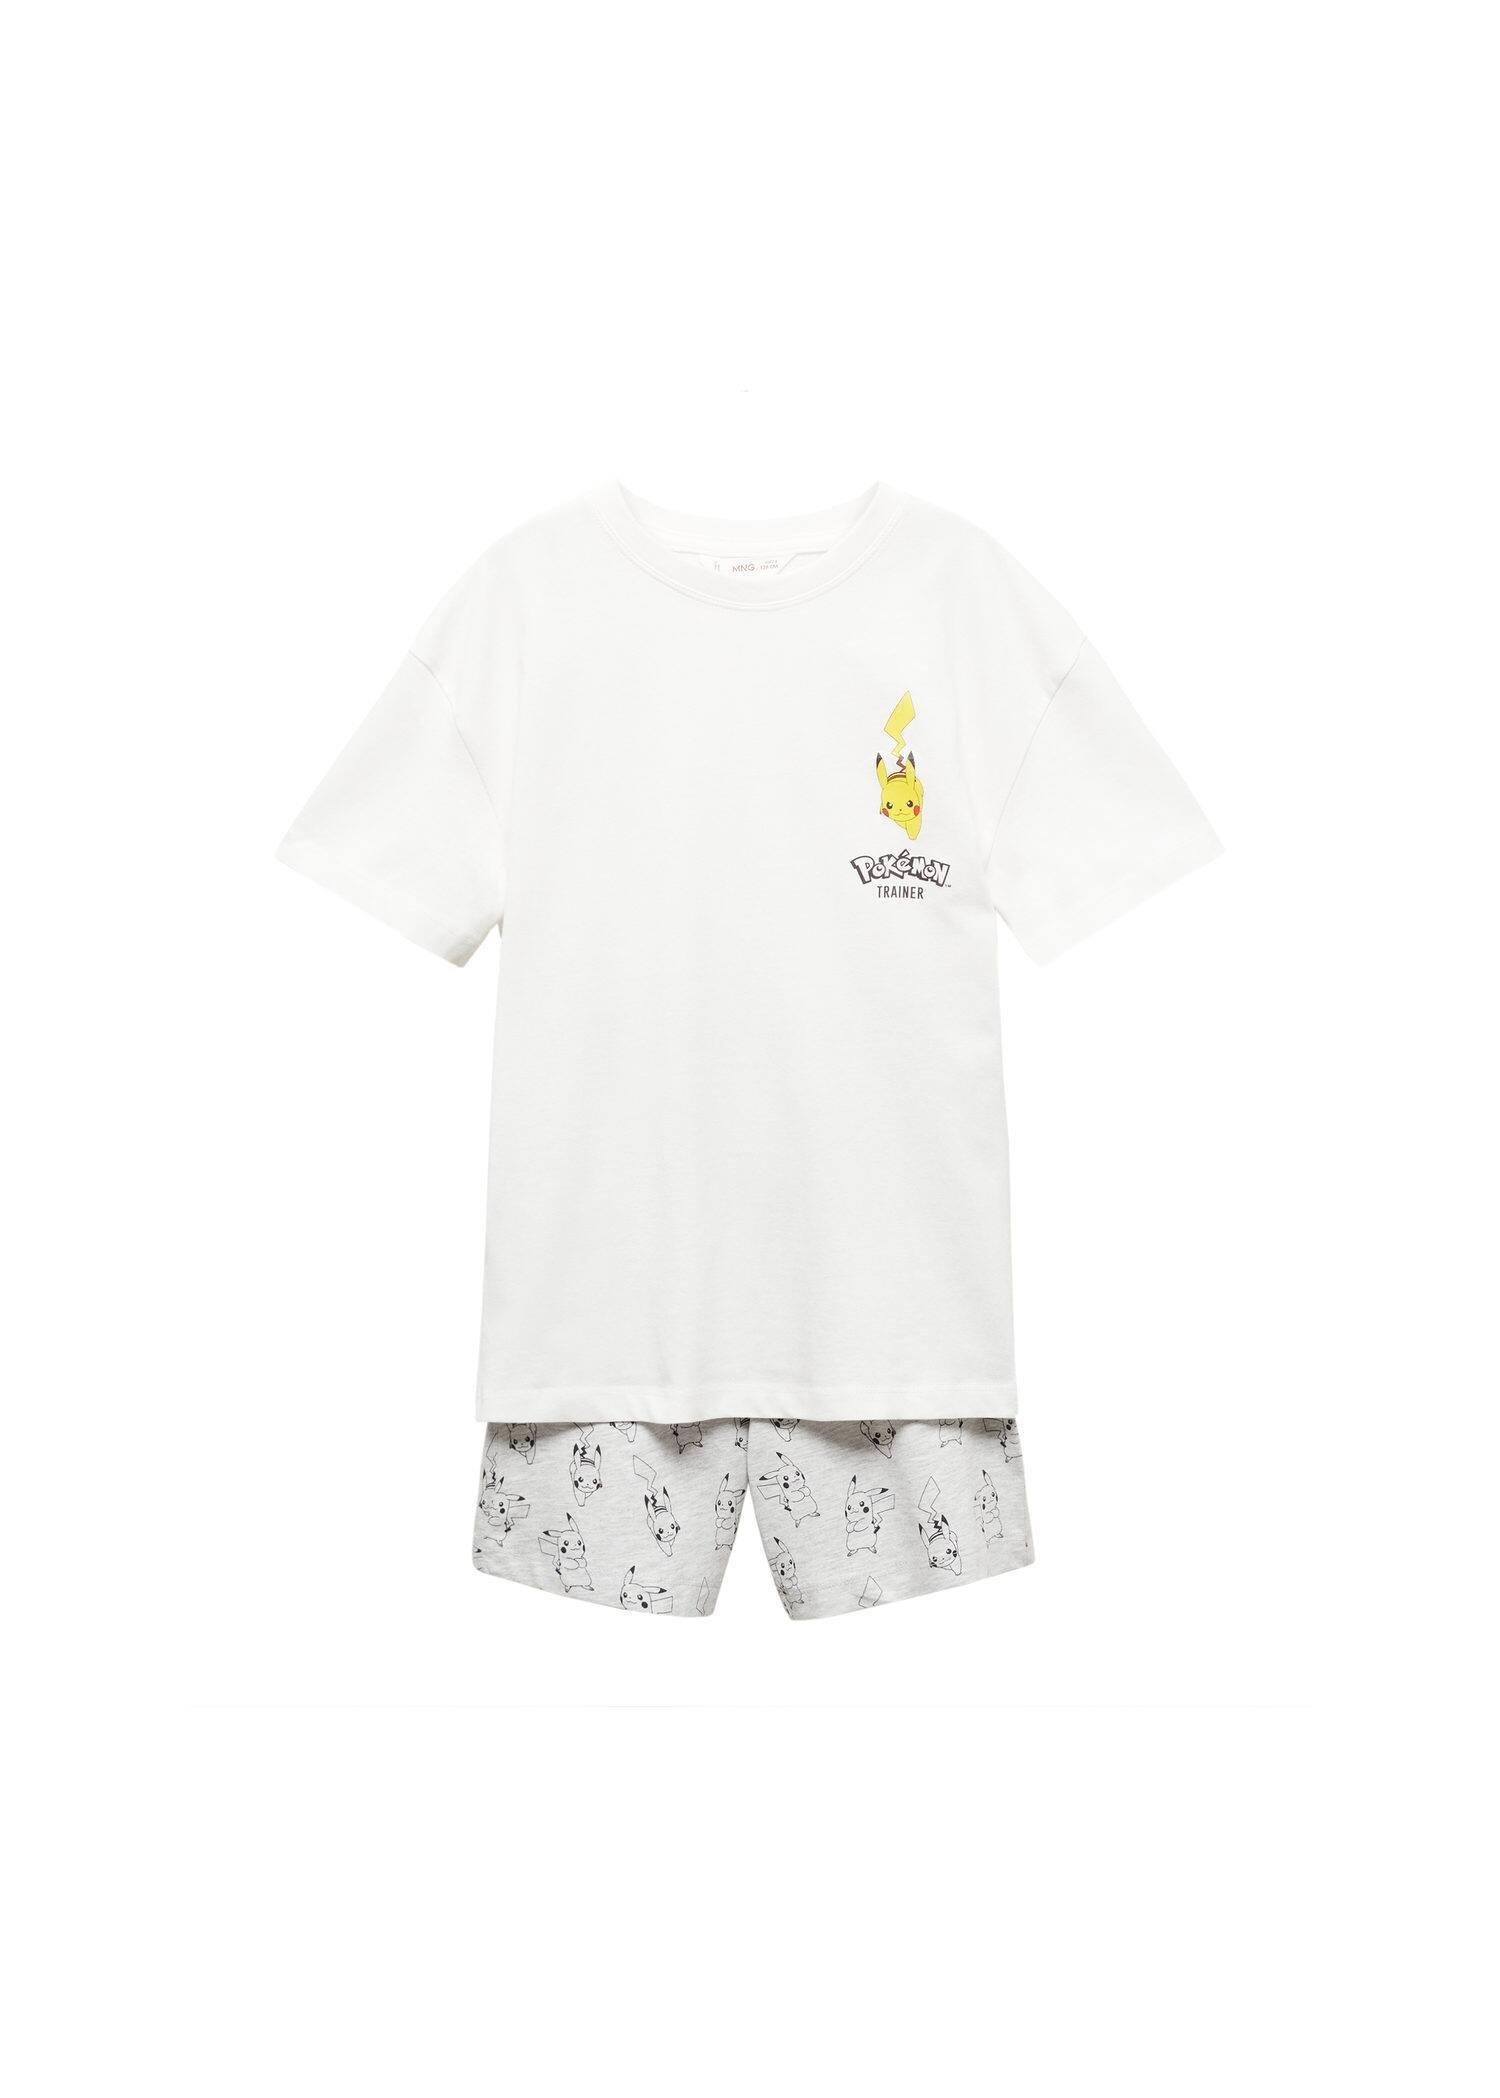 Mango - Grey Pikachu Pokemon Pyjamas, Kids Boys